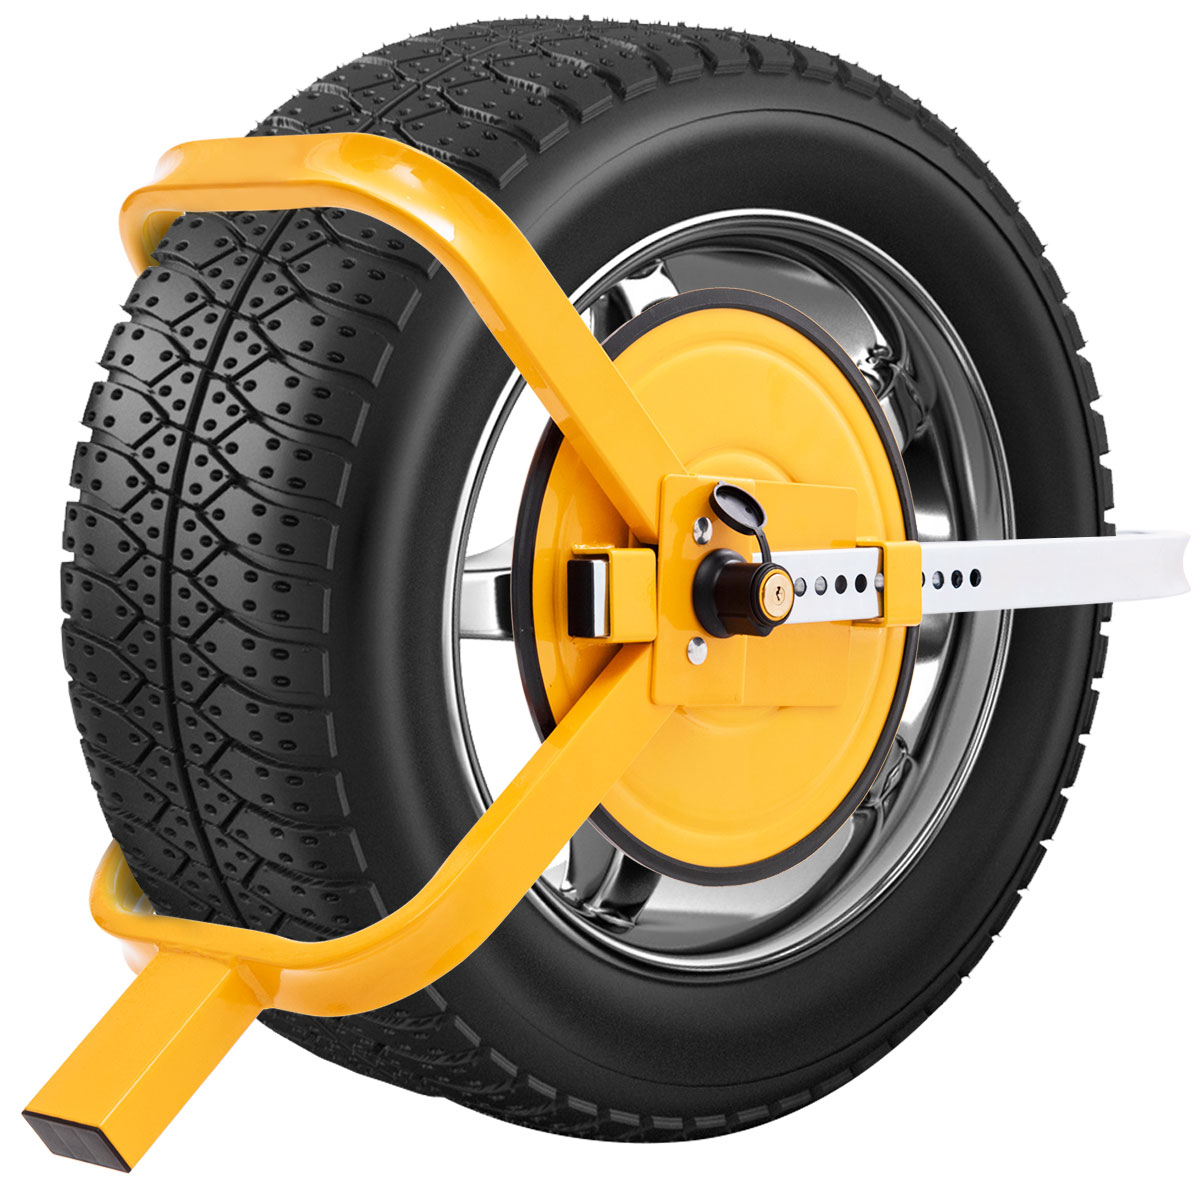 bandstaal voor zware auto's anti-diefstal wielklem voor 13-15 inch band diameter parkeerauto vrachtw